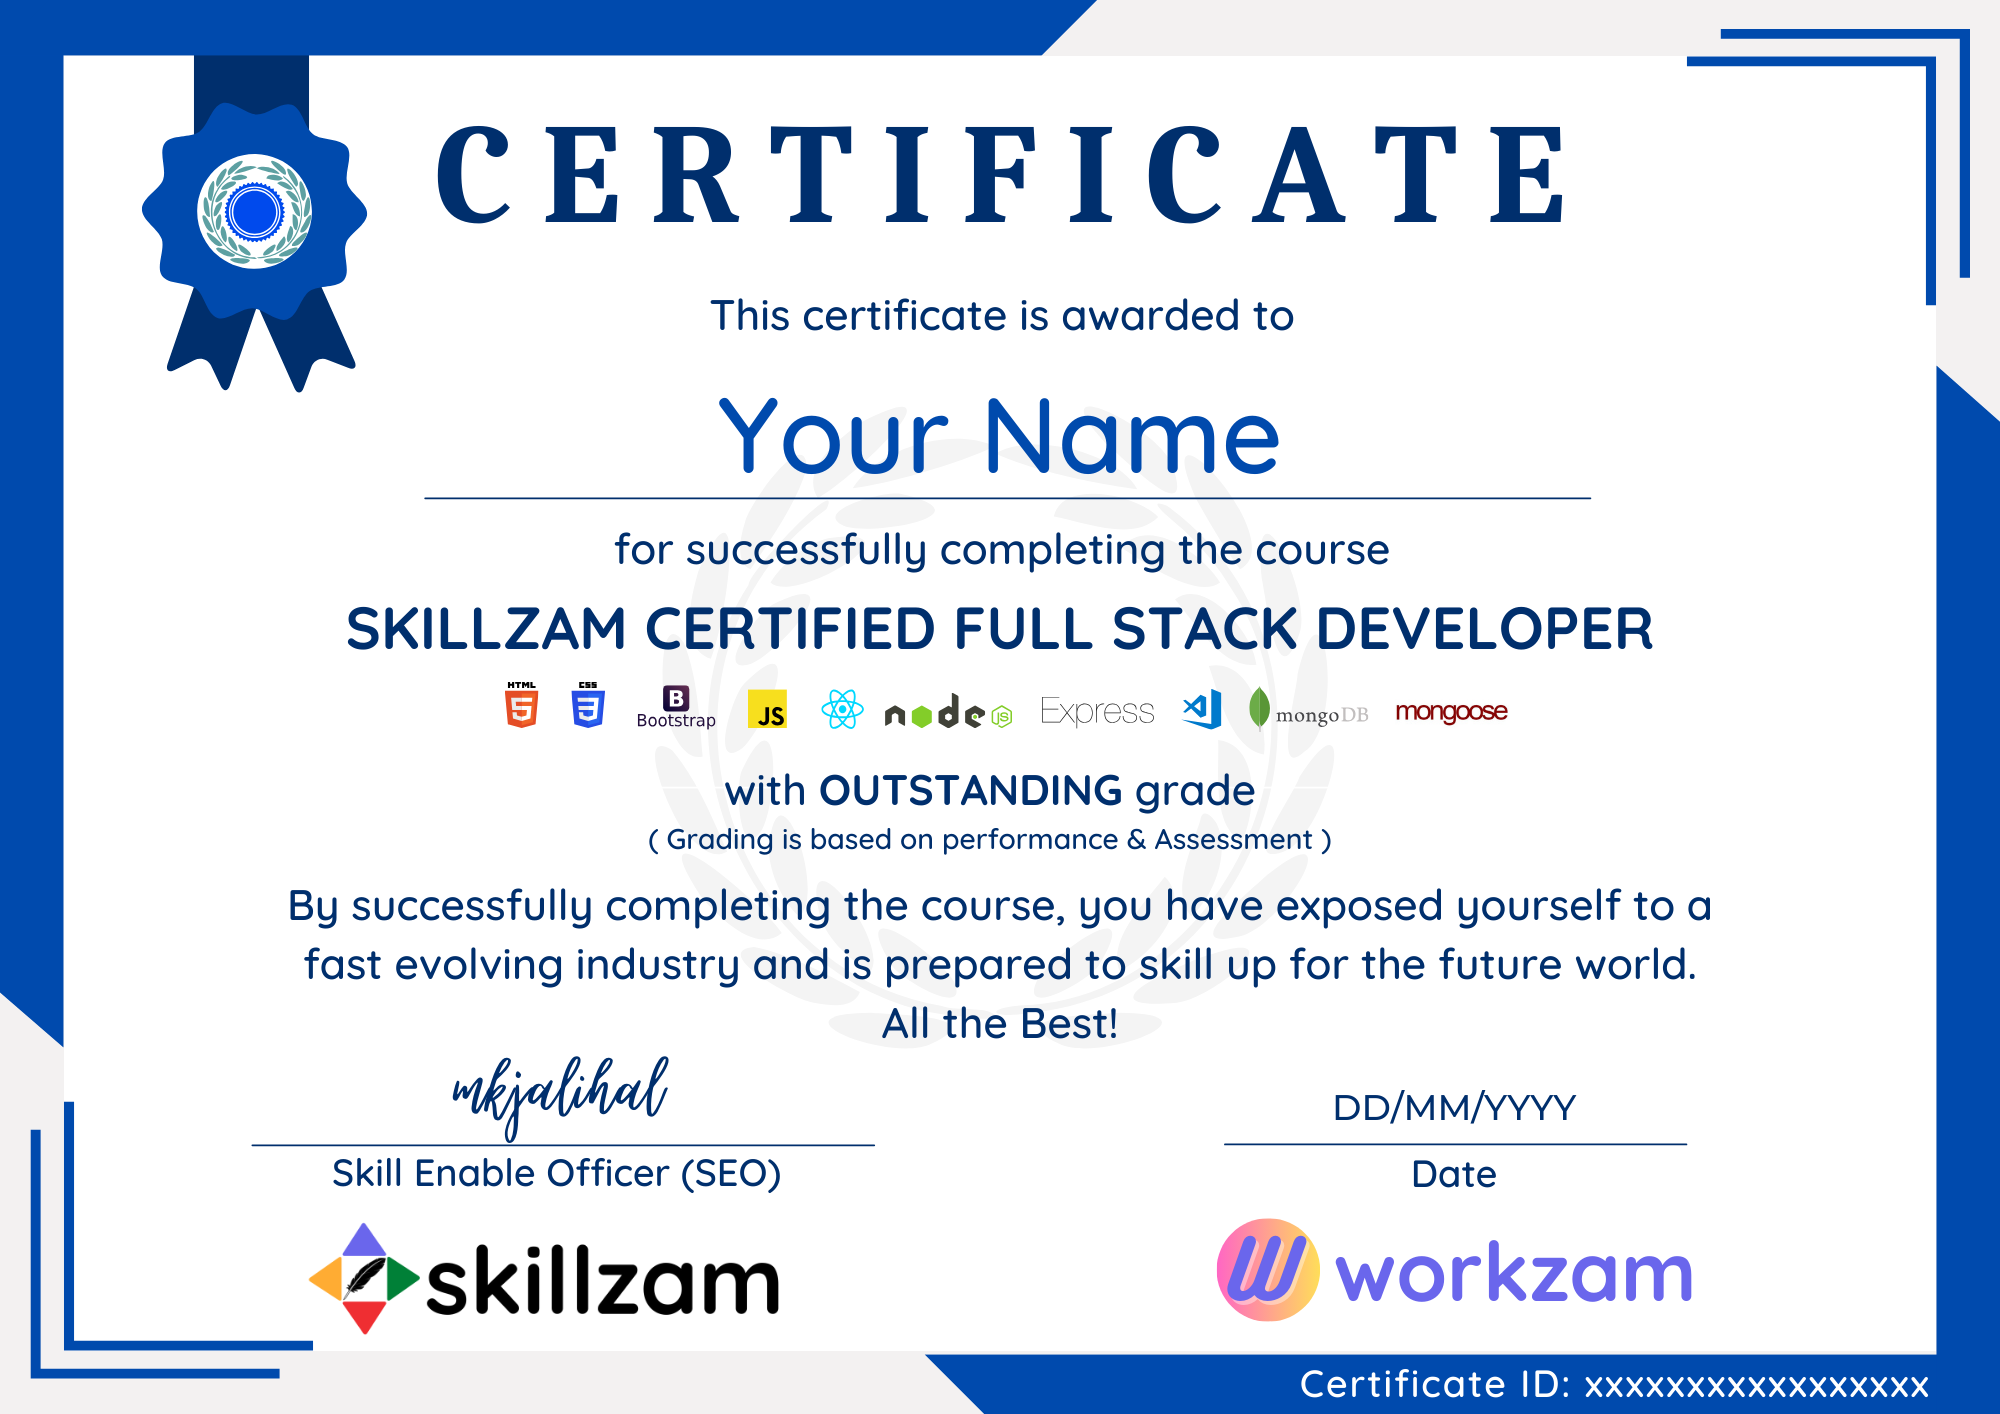 Skillzam certified full stack developer